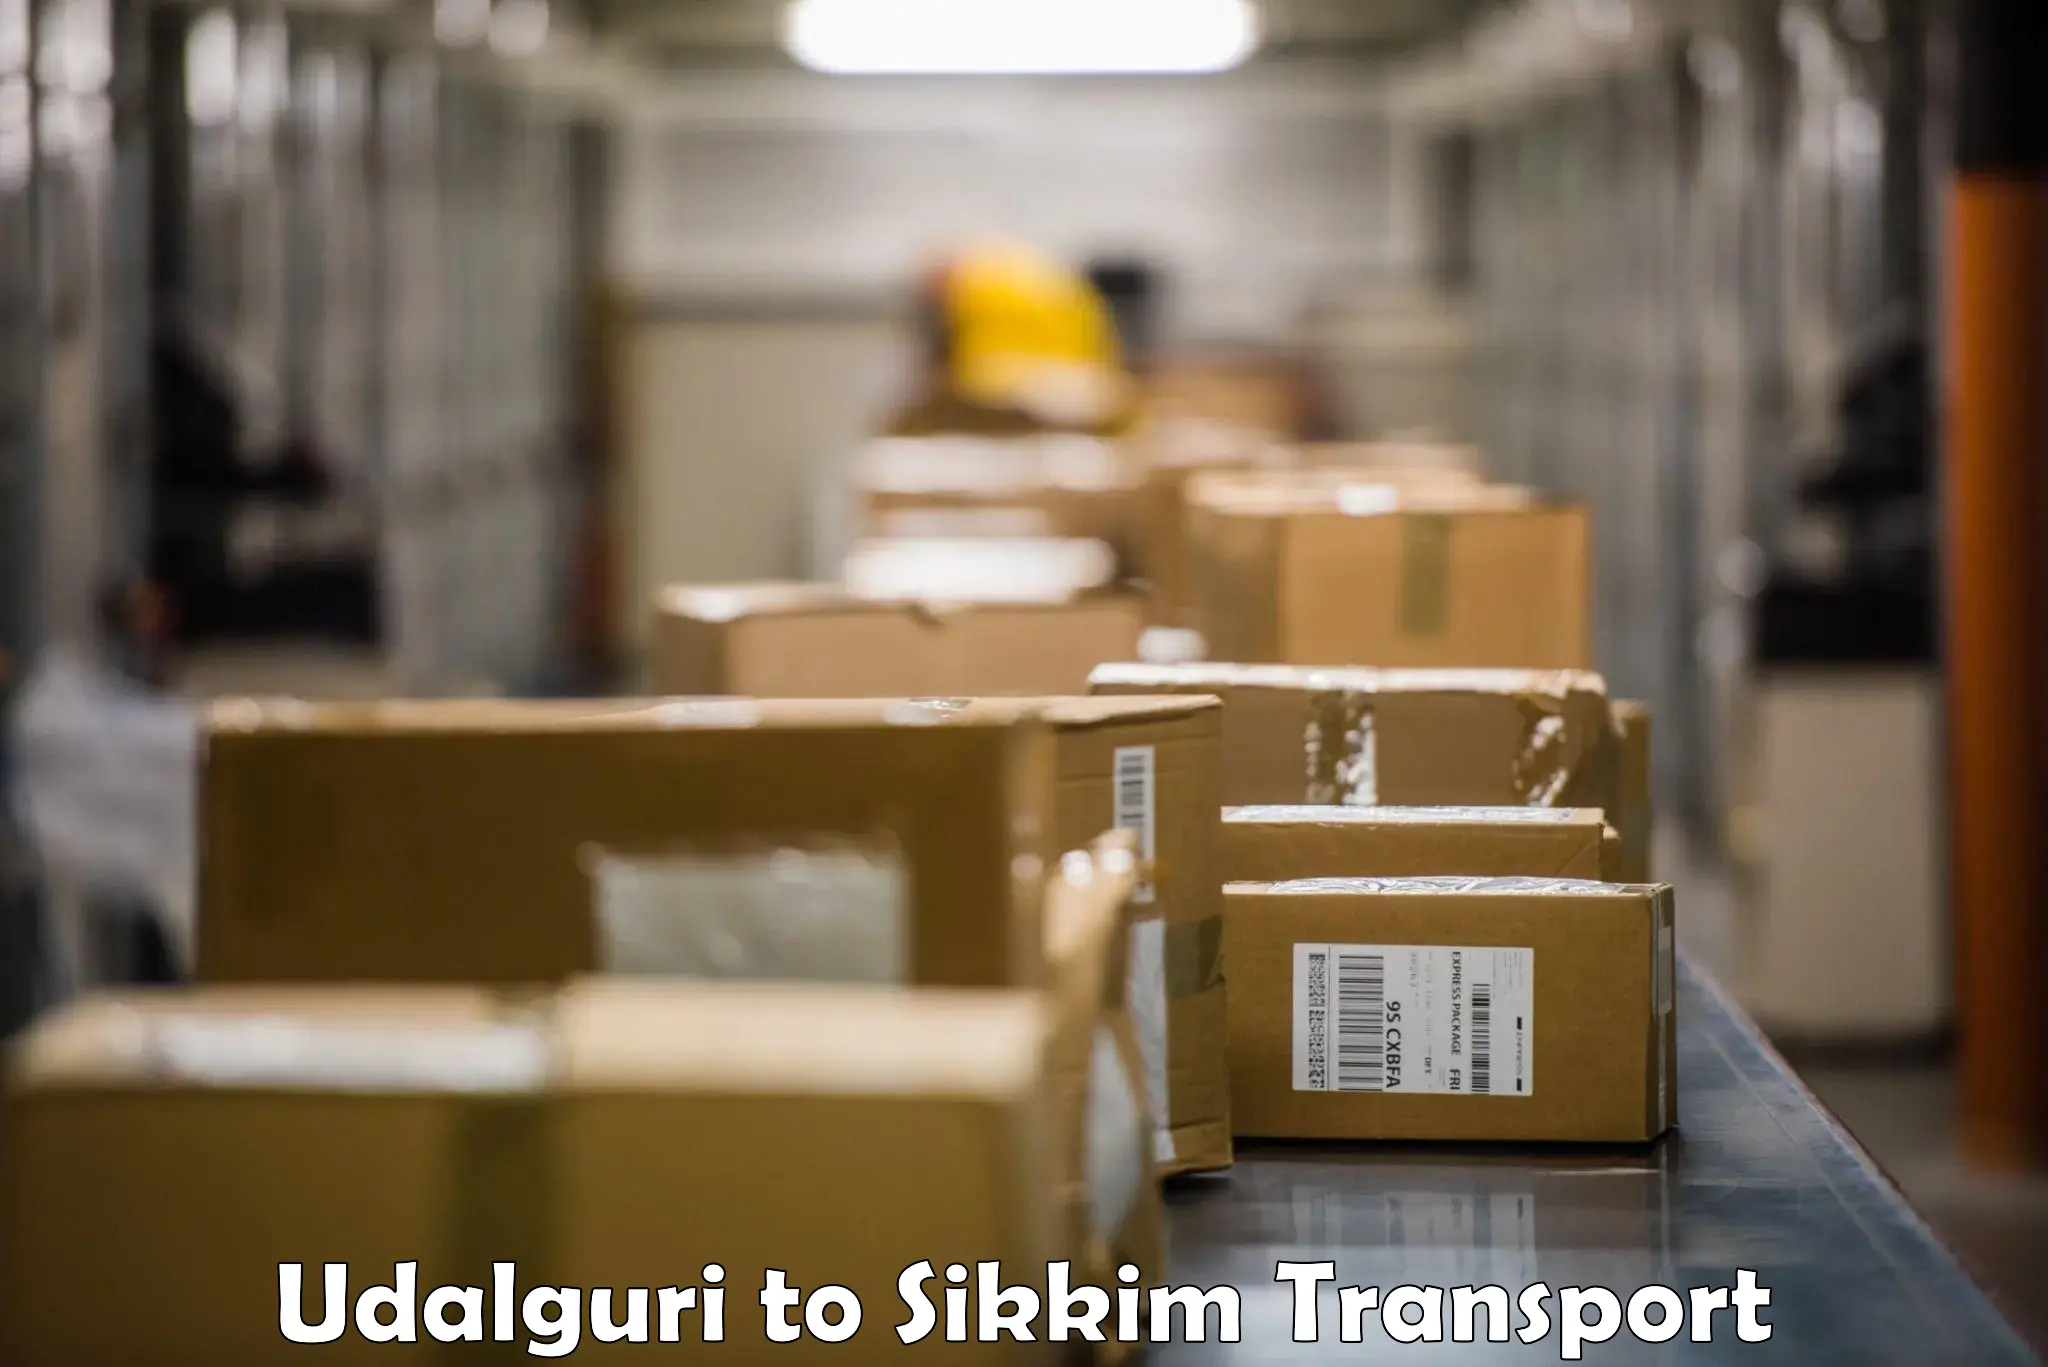 Pick up transport service Udalguri to Sikkim